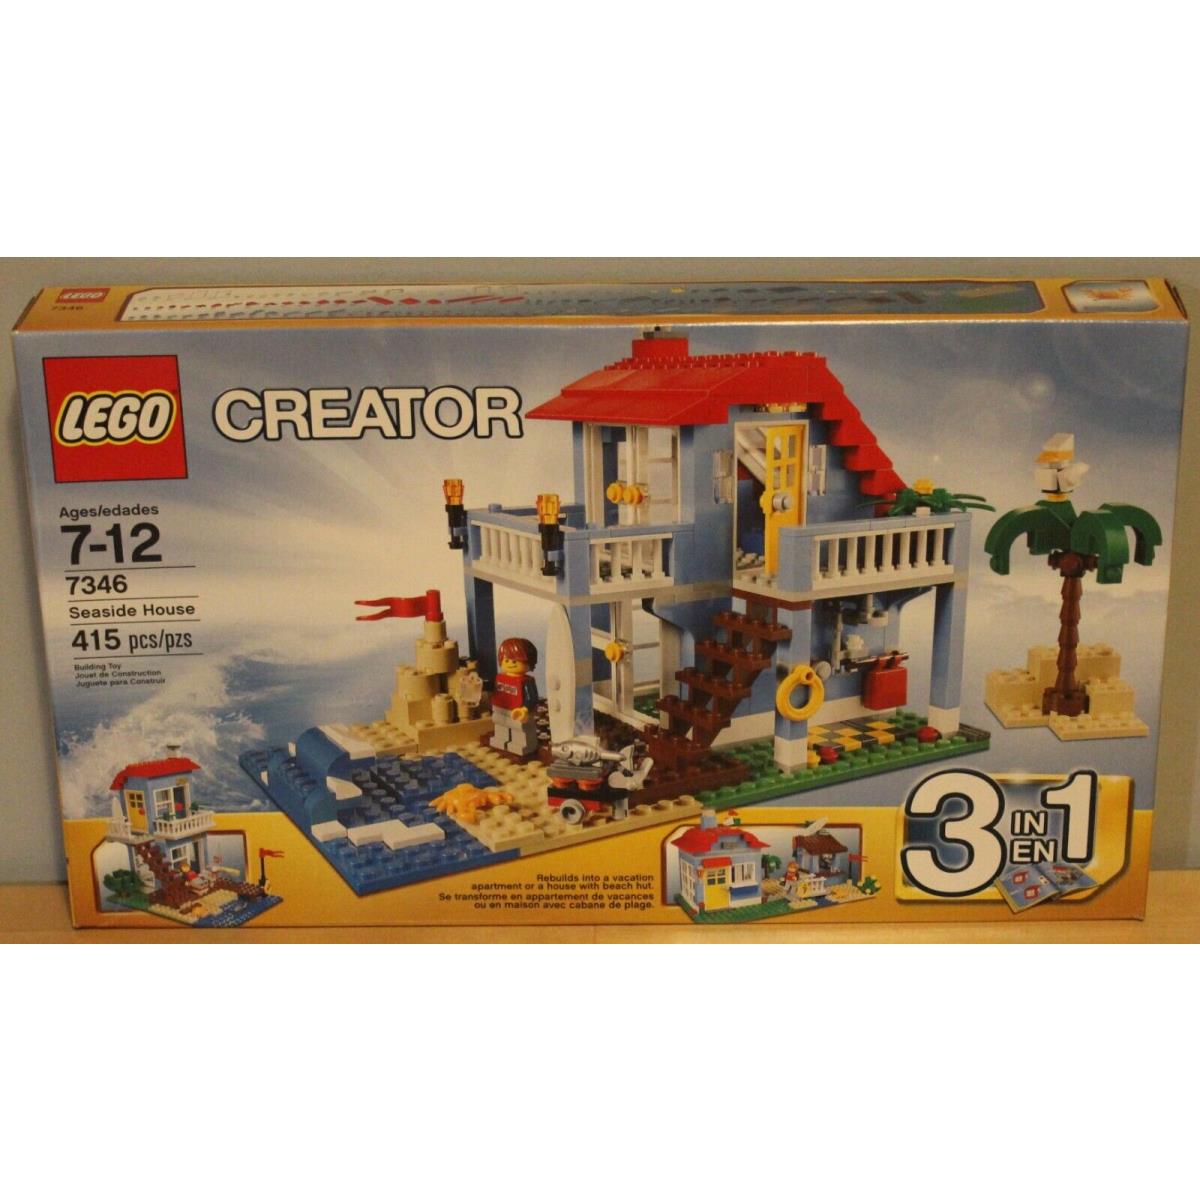 Damaged/new/sealed Lego 7346 Creator 3 IN 1 Seaside House 2012